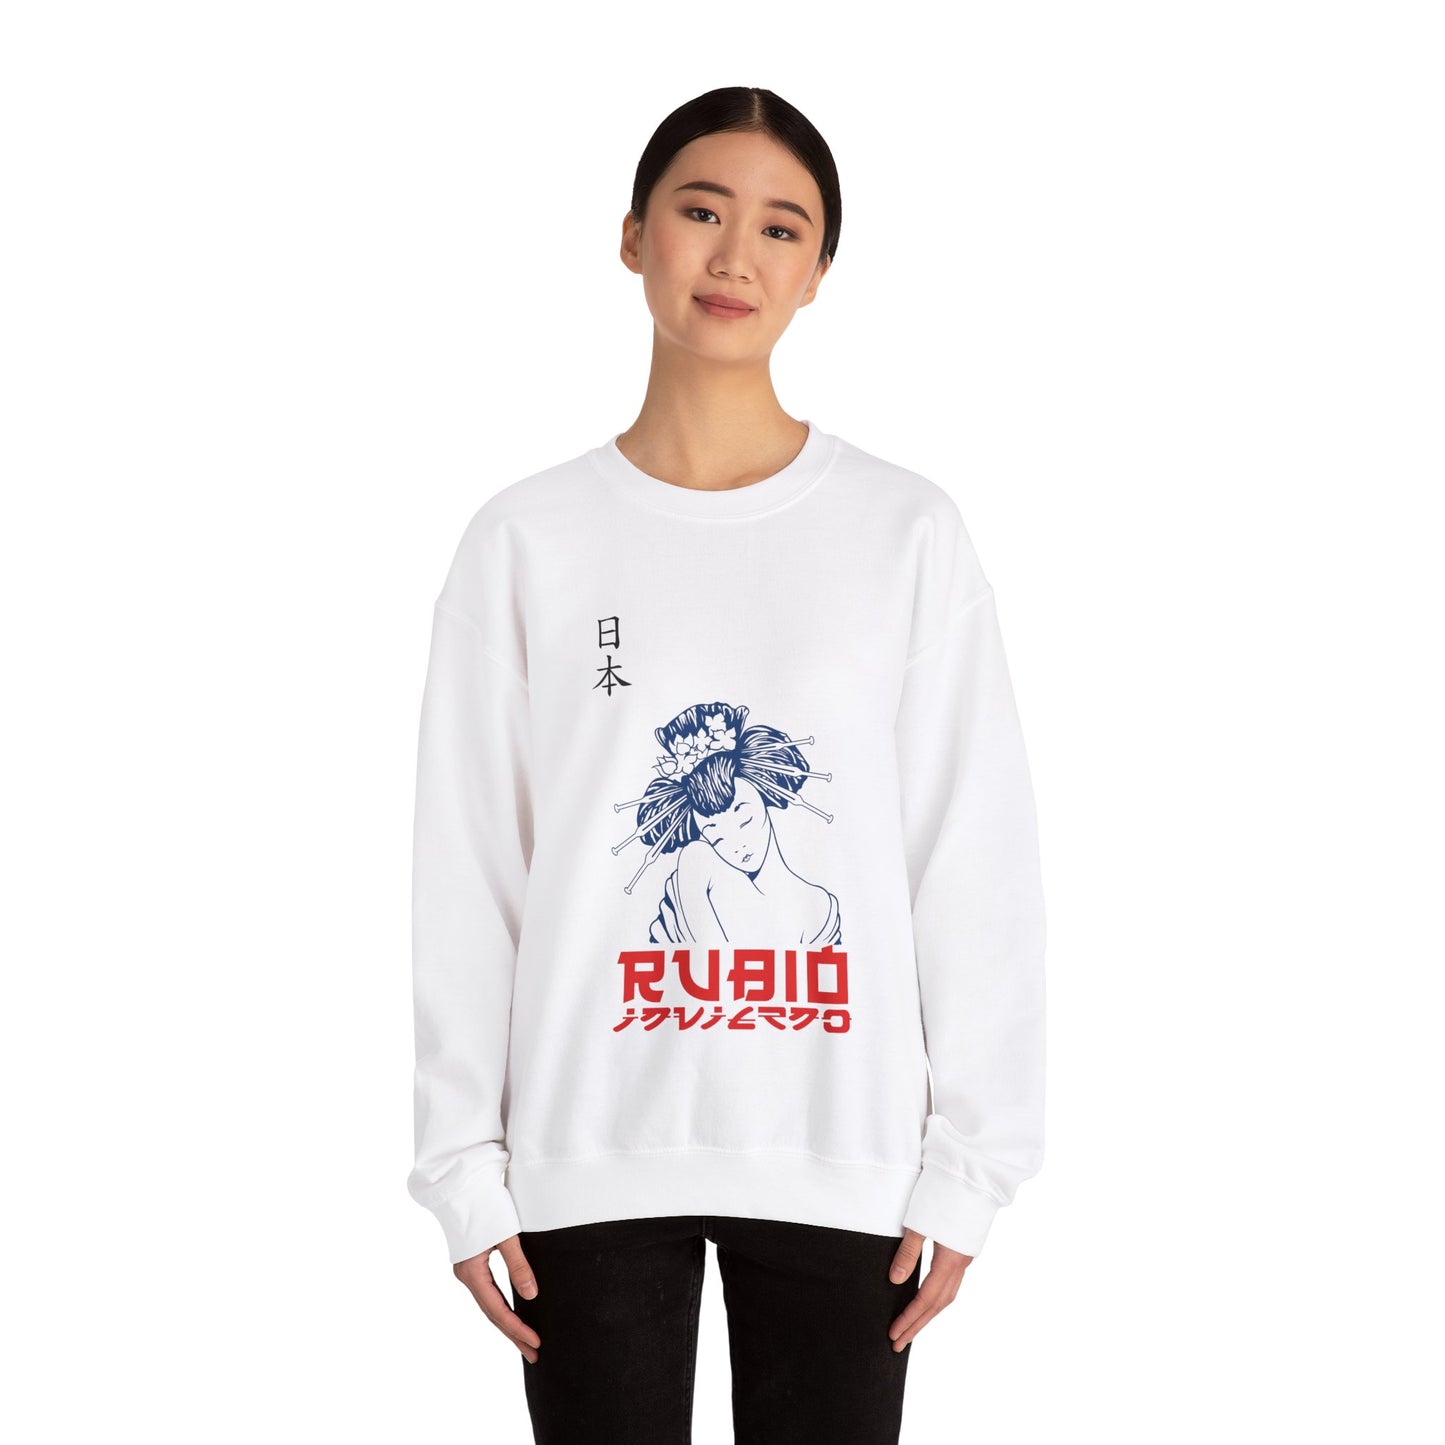 Rubio Invierno/Blue White Sweater